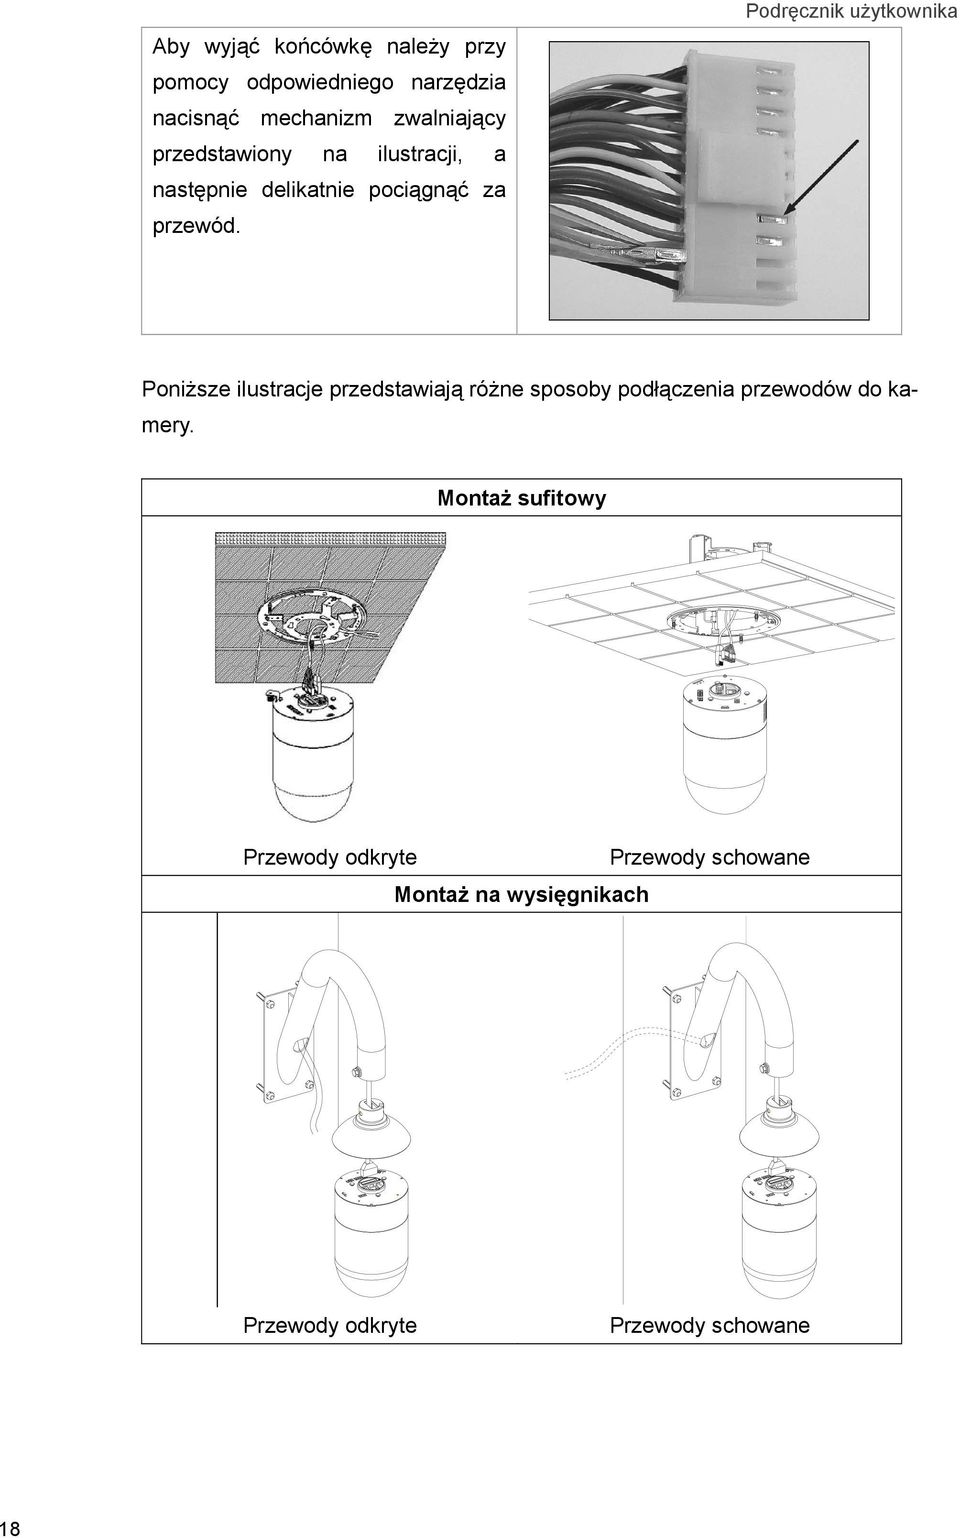 Podręcznik użytkownika Poniższe ilustracje przedstawiają różne sposoby podłączenia przewodów do